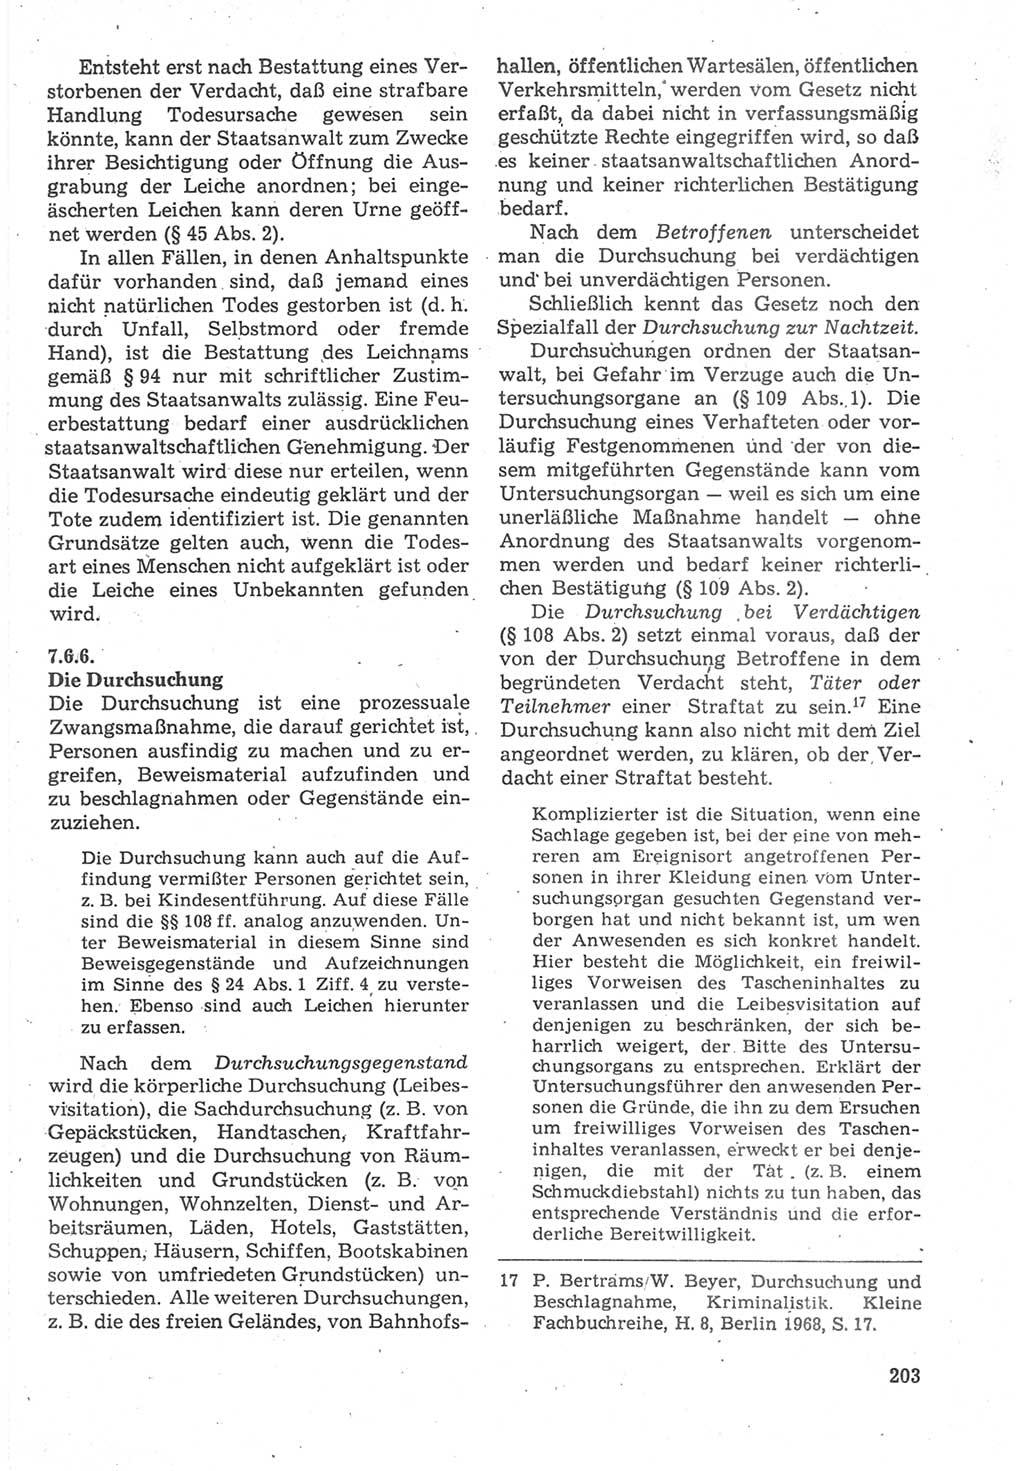 Strafverfahrensrecht [Deutsche Demokratische Republik (DDR)], Lehrbuch 1987, Seite 203 (Strafverf.-R. DDR Lb. 1987, S. 203)